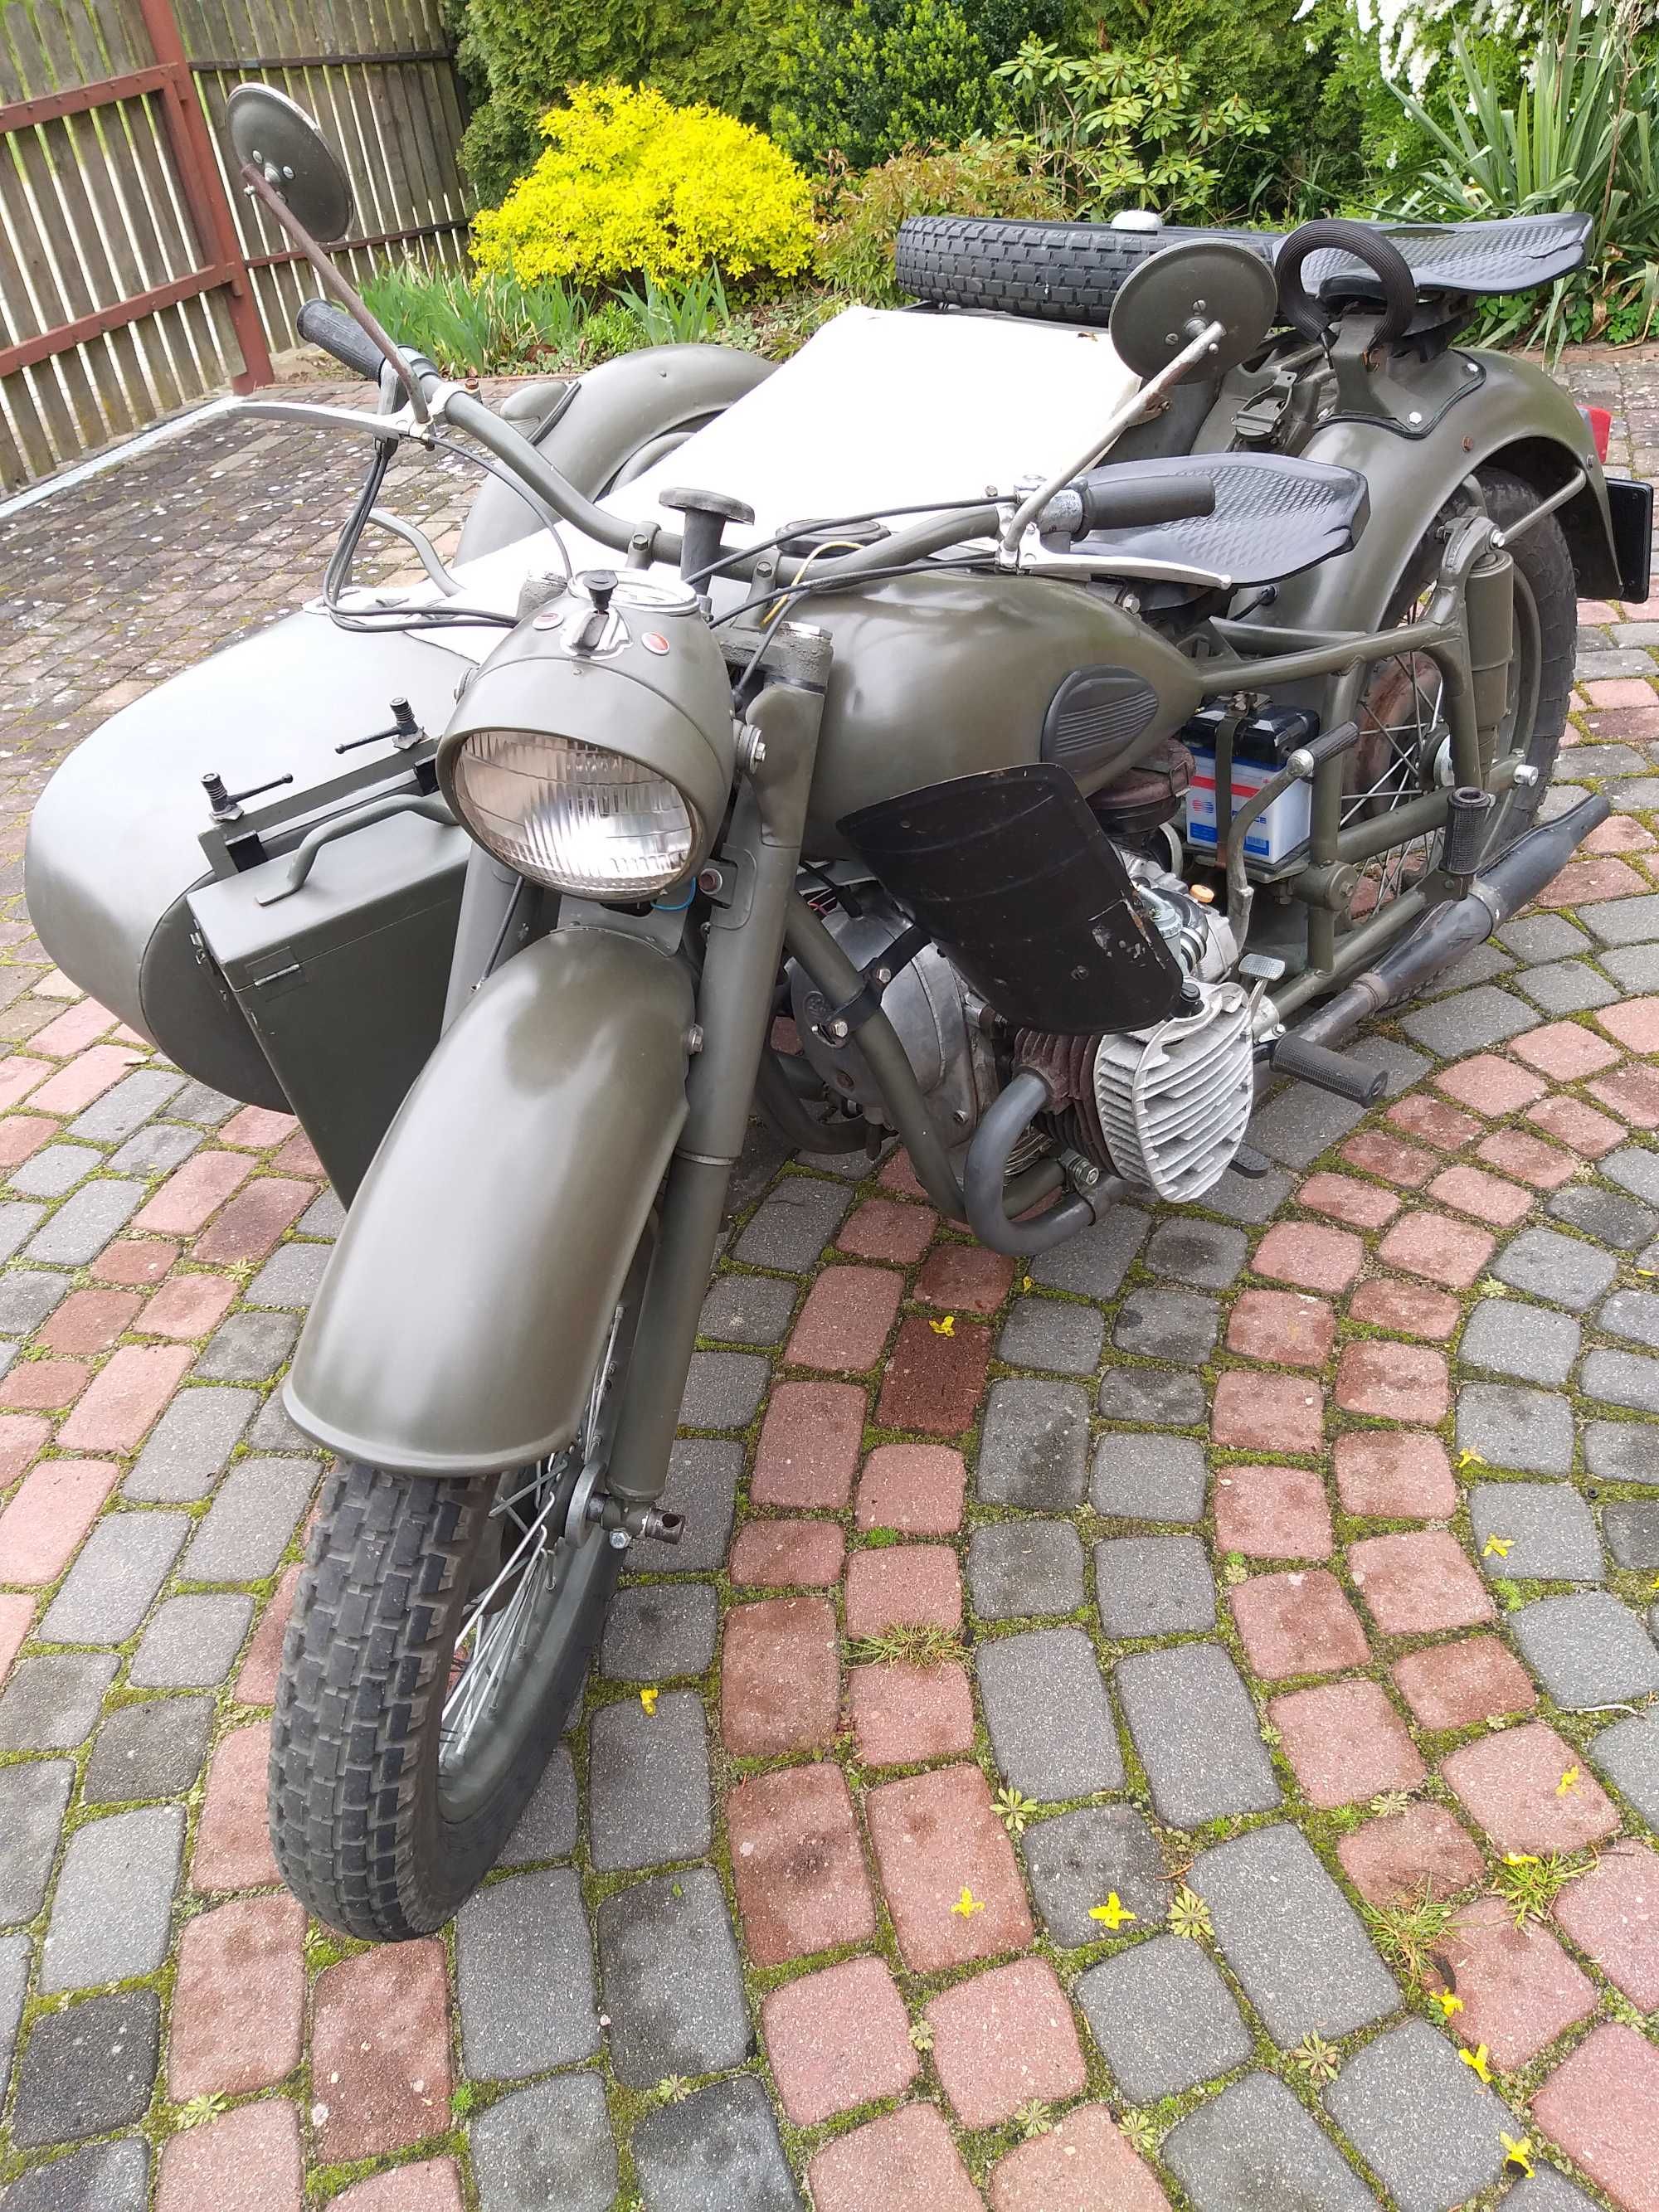 Motocykl K750 po renowacji